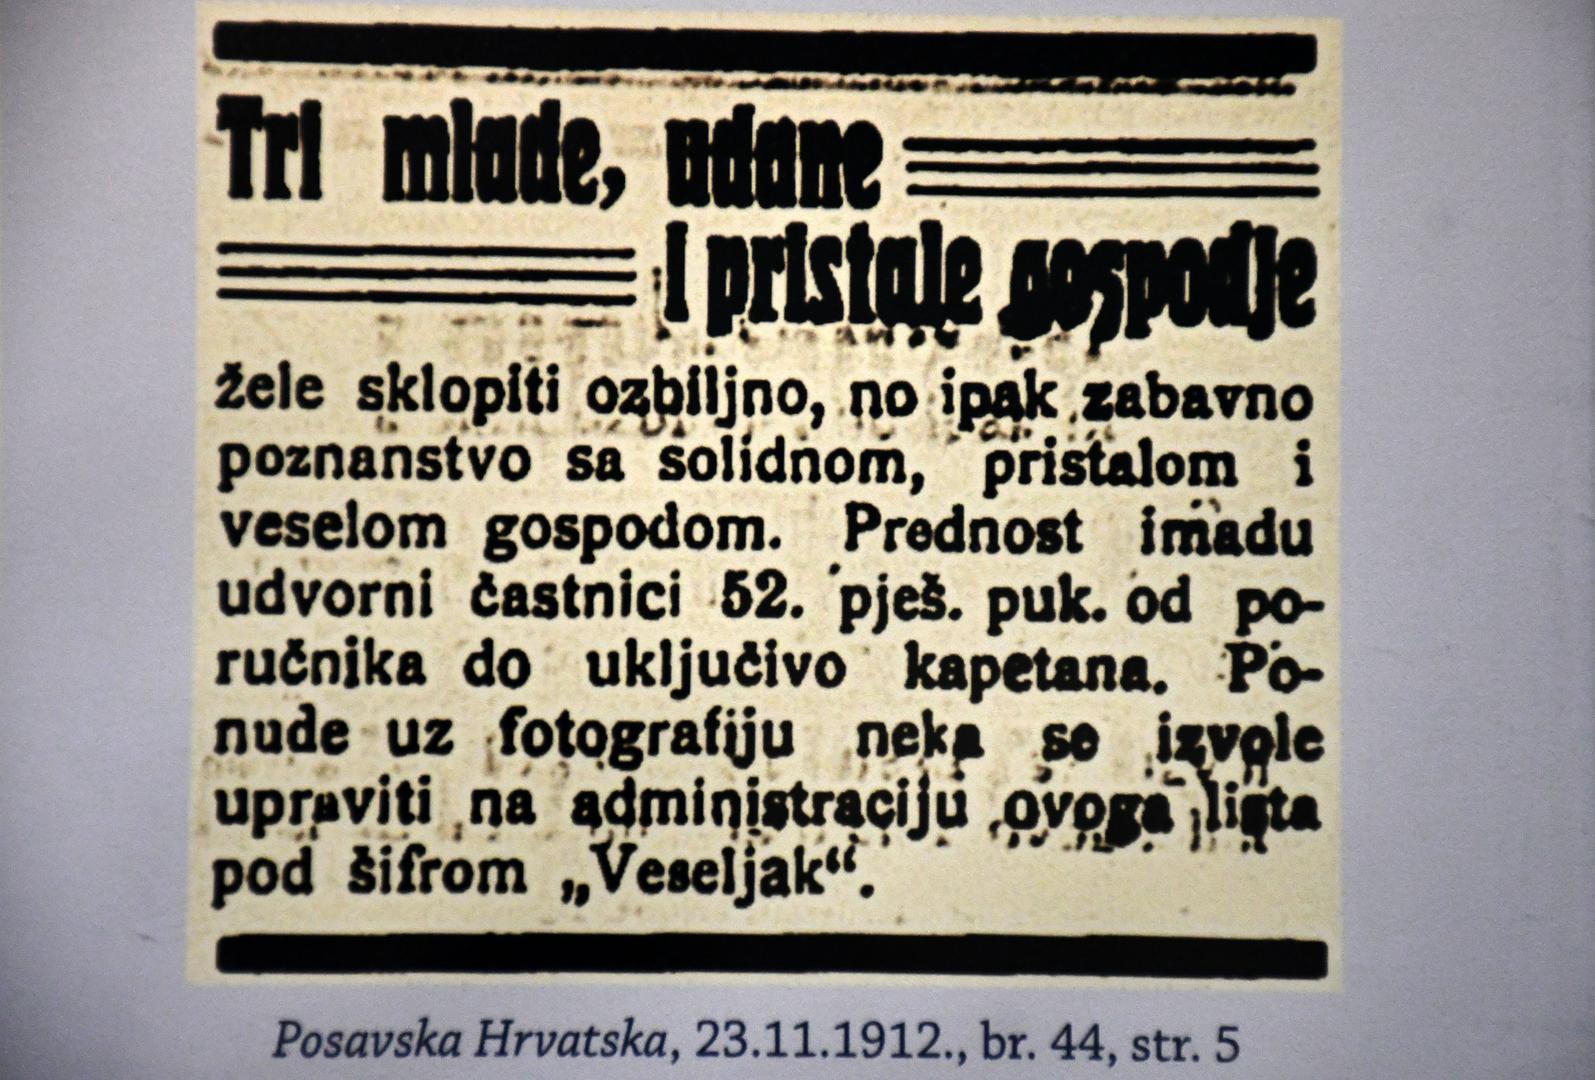 U Slavonskom Brodu održana je zanimljiva izložba oglasa tijekom 20. stoljeća.